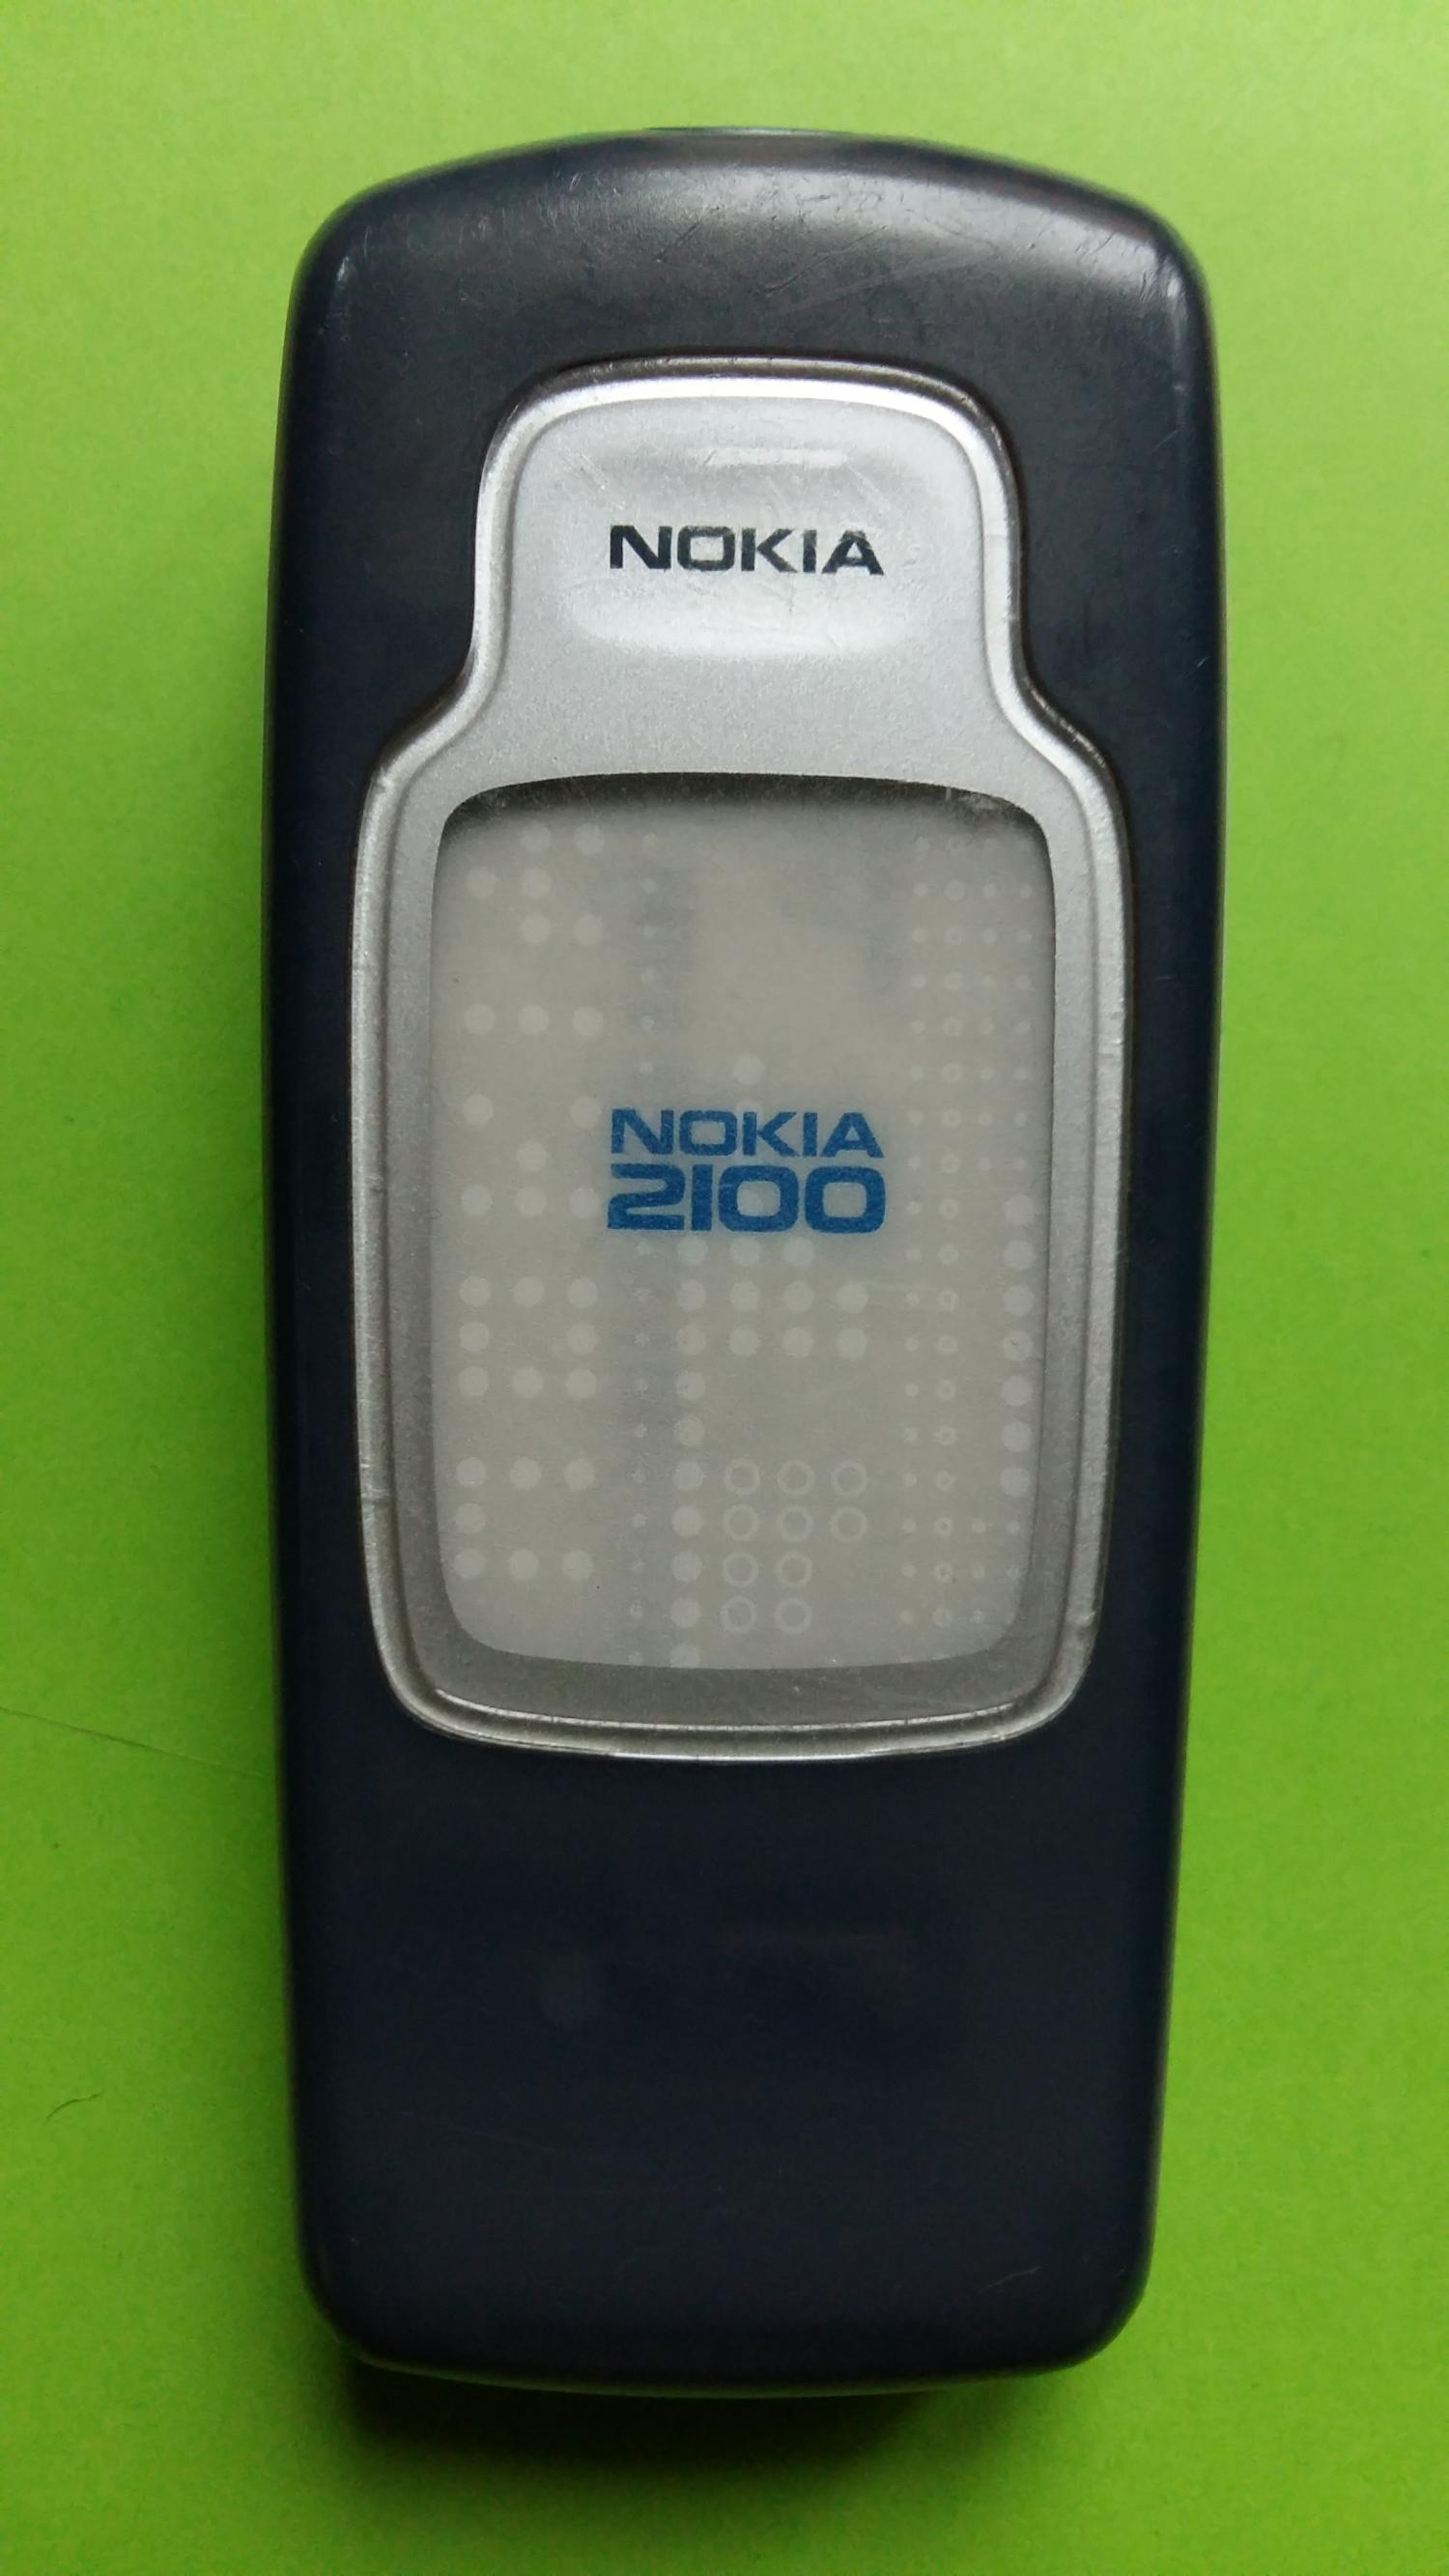 image-7301718-Nokia 2100 (3)3.jpg